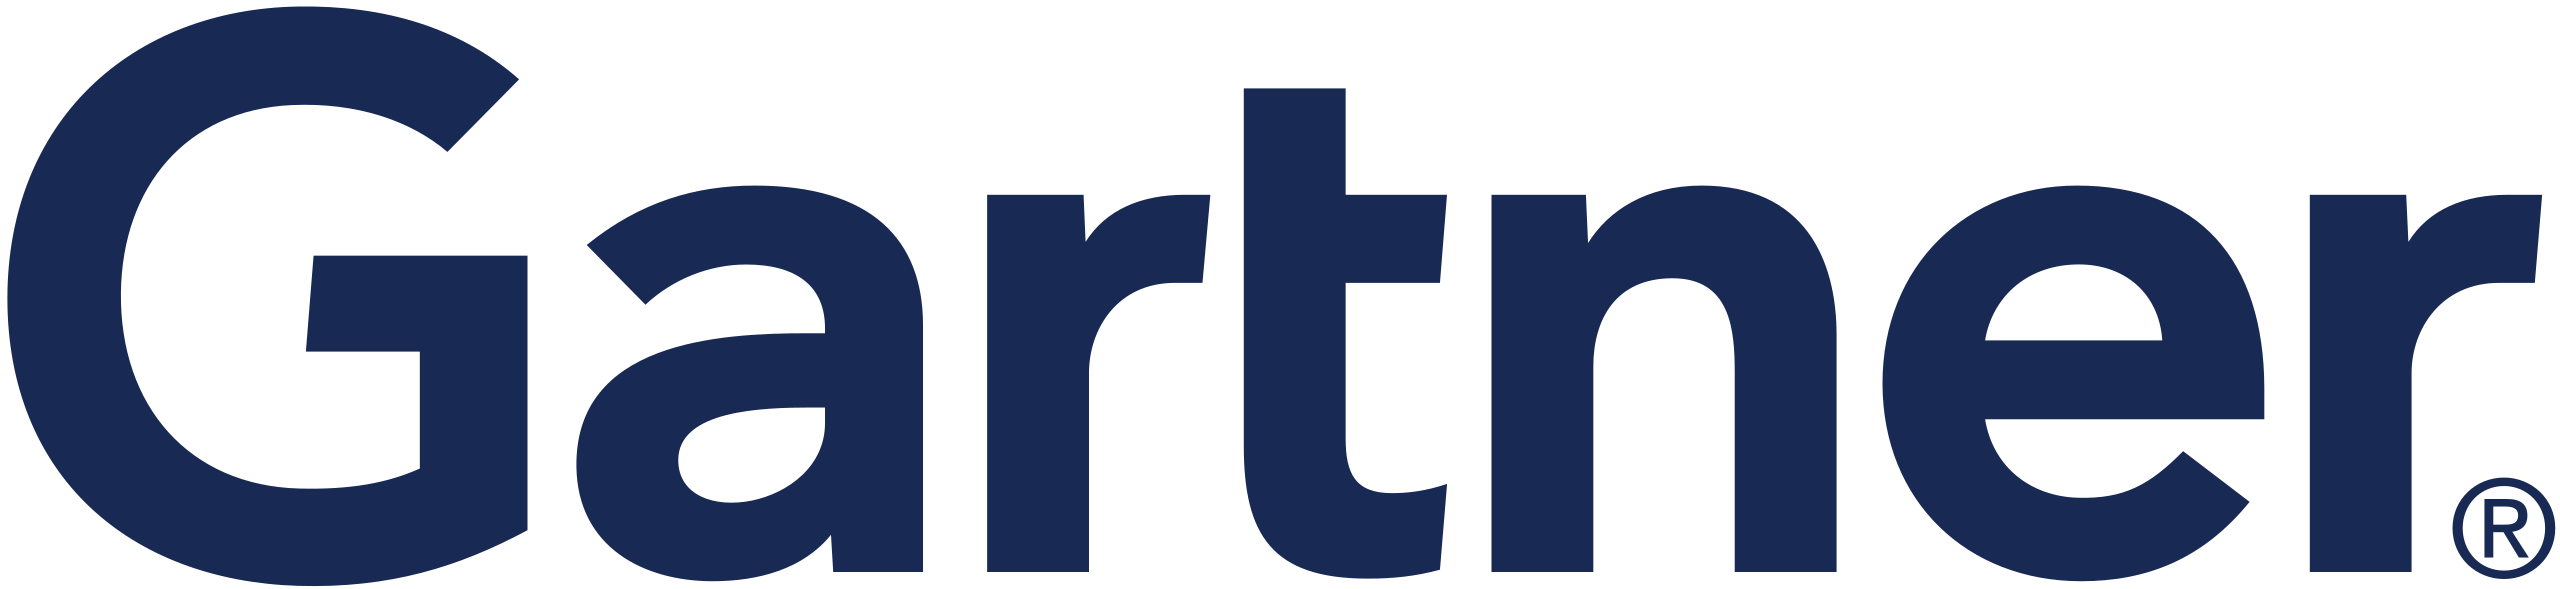 Gartner-logo-2560x589.png